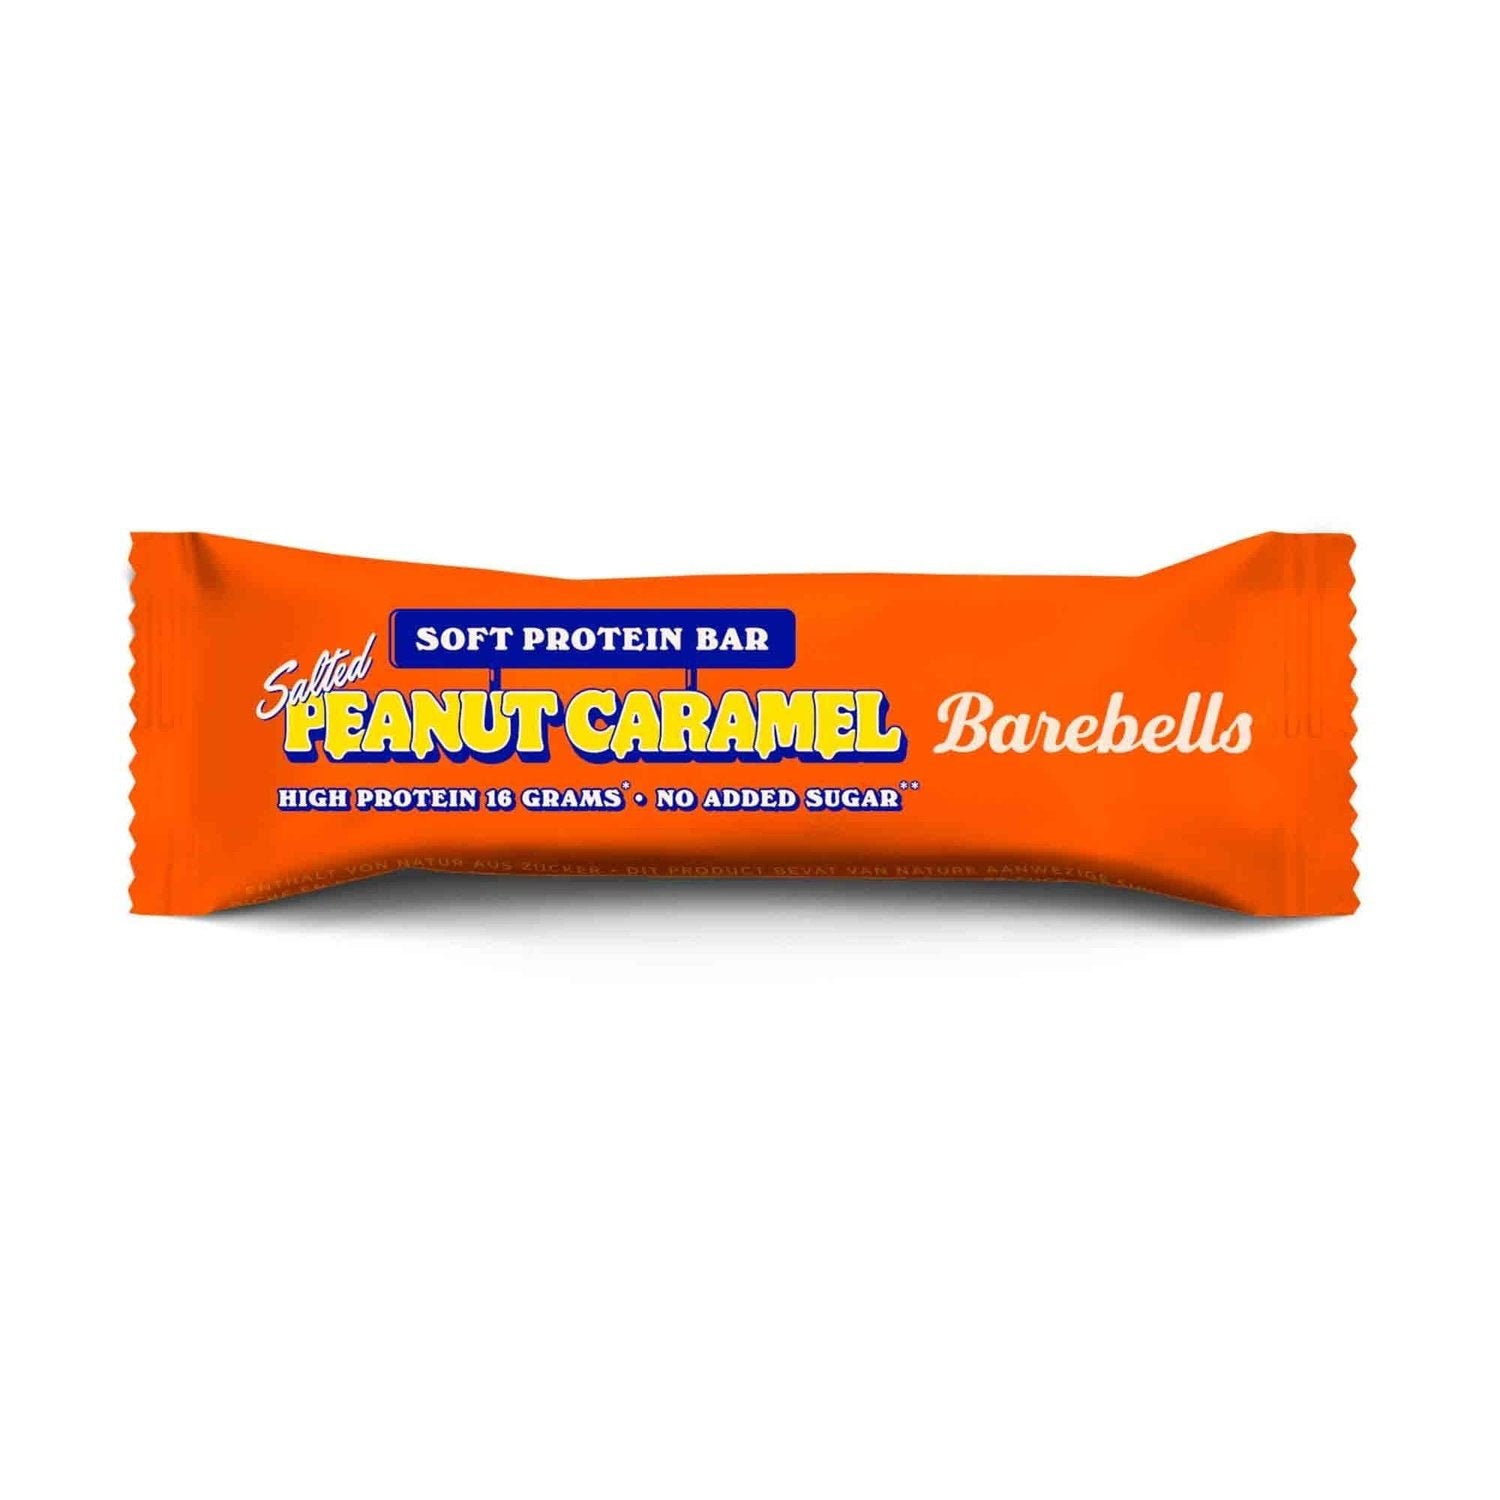 Barebells Barebells Soft Proteinriegel 55 g Salted Peanut Caramel kaufen bei HighPowered.ch